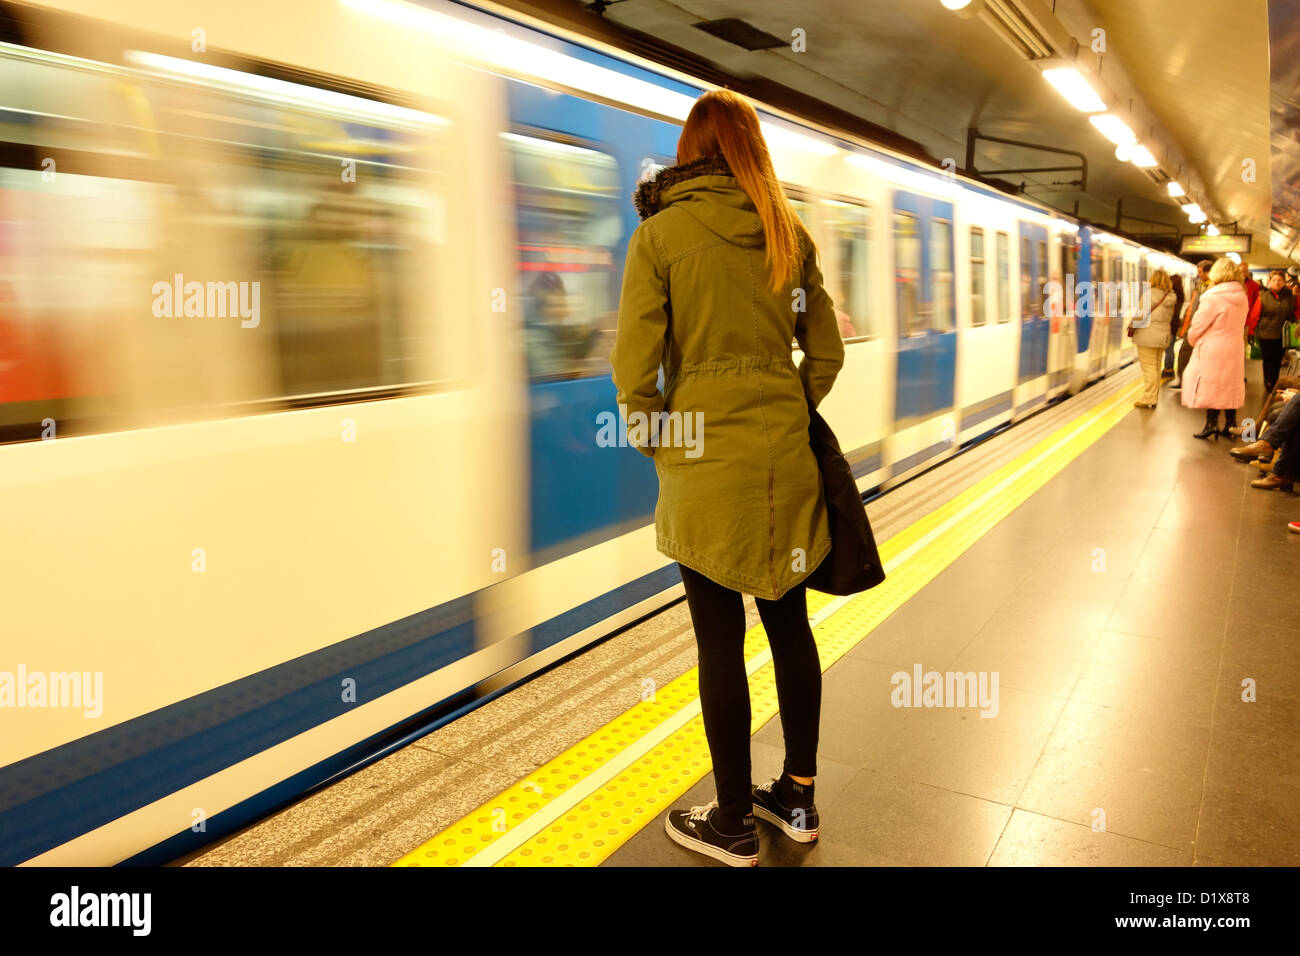 Métro de Madrid Espagne voyage femme motion blur de transport public de voyageurs Banque D'Images